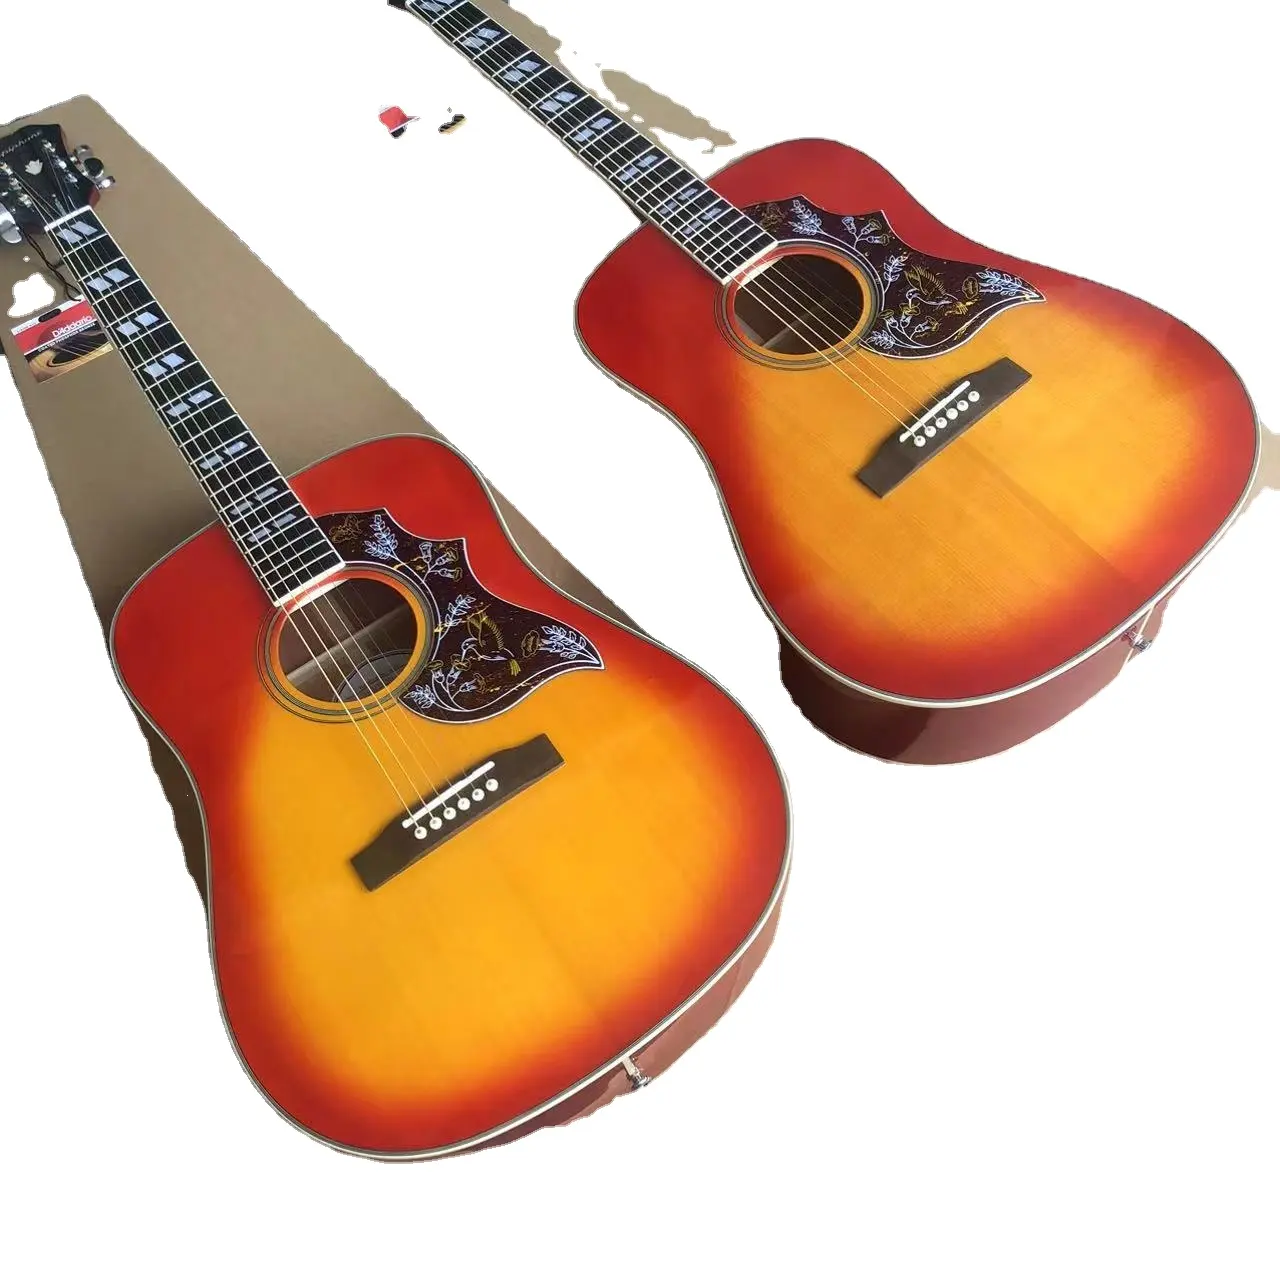 جيتار صوتي مقاس 41 بوصة جيتار صوتي من شركة سبروز شابيلي، وجه مفرد، جيتار صوتي من Hummingbird